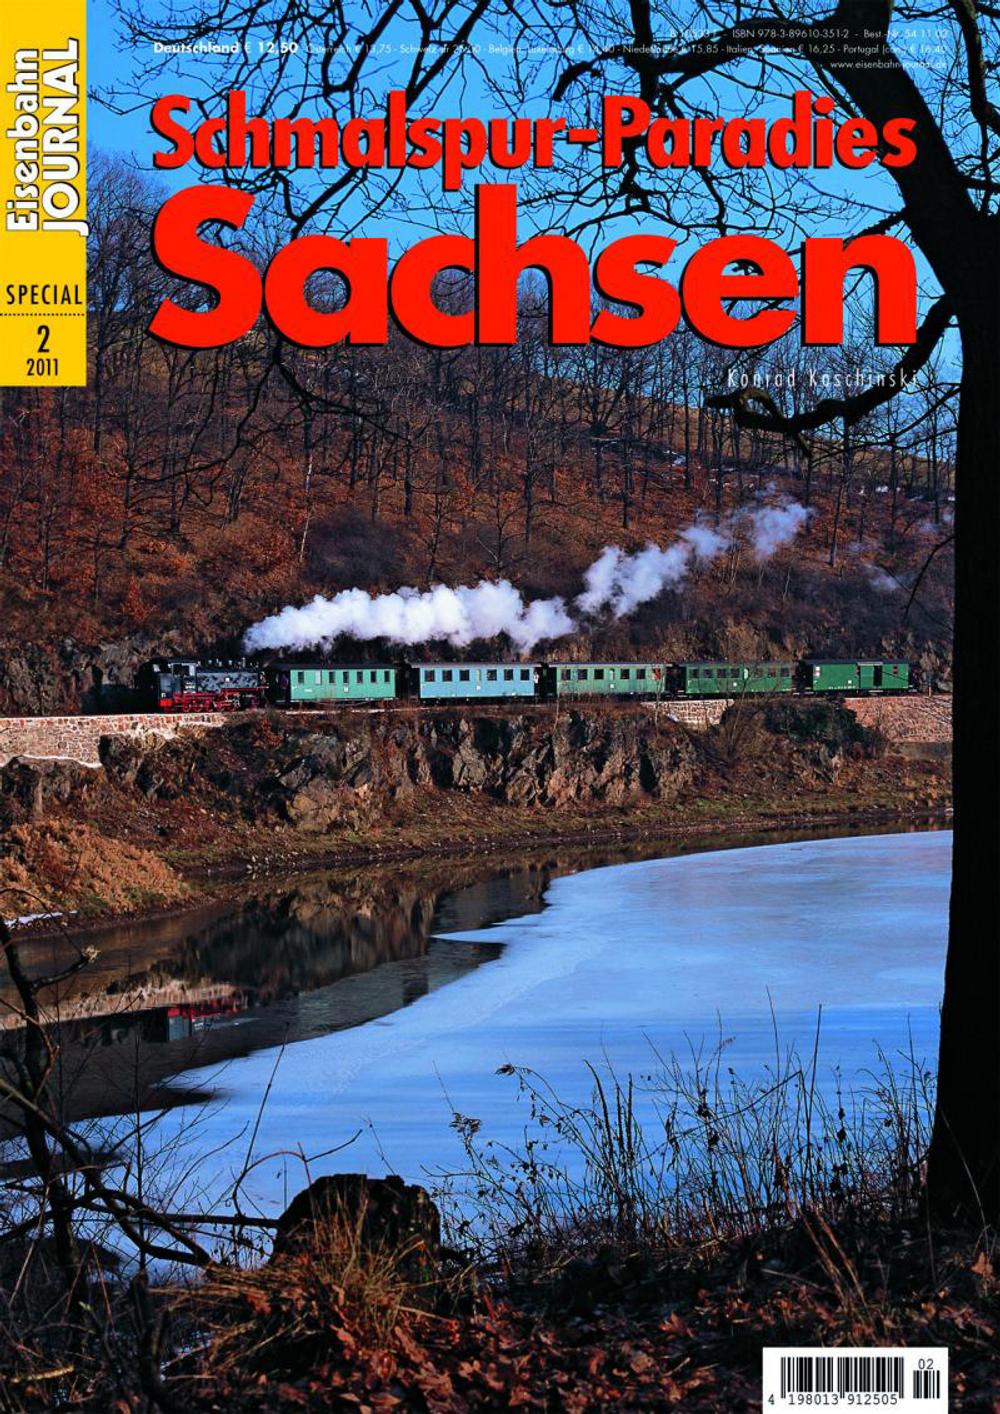 Cover Broschüre "Schmalspur-Paradies Sachsen"